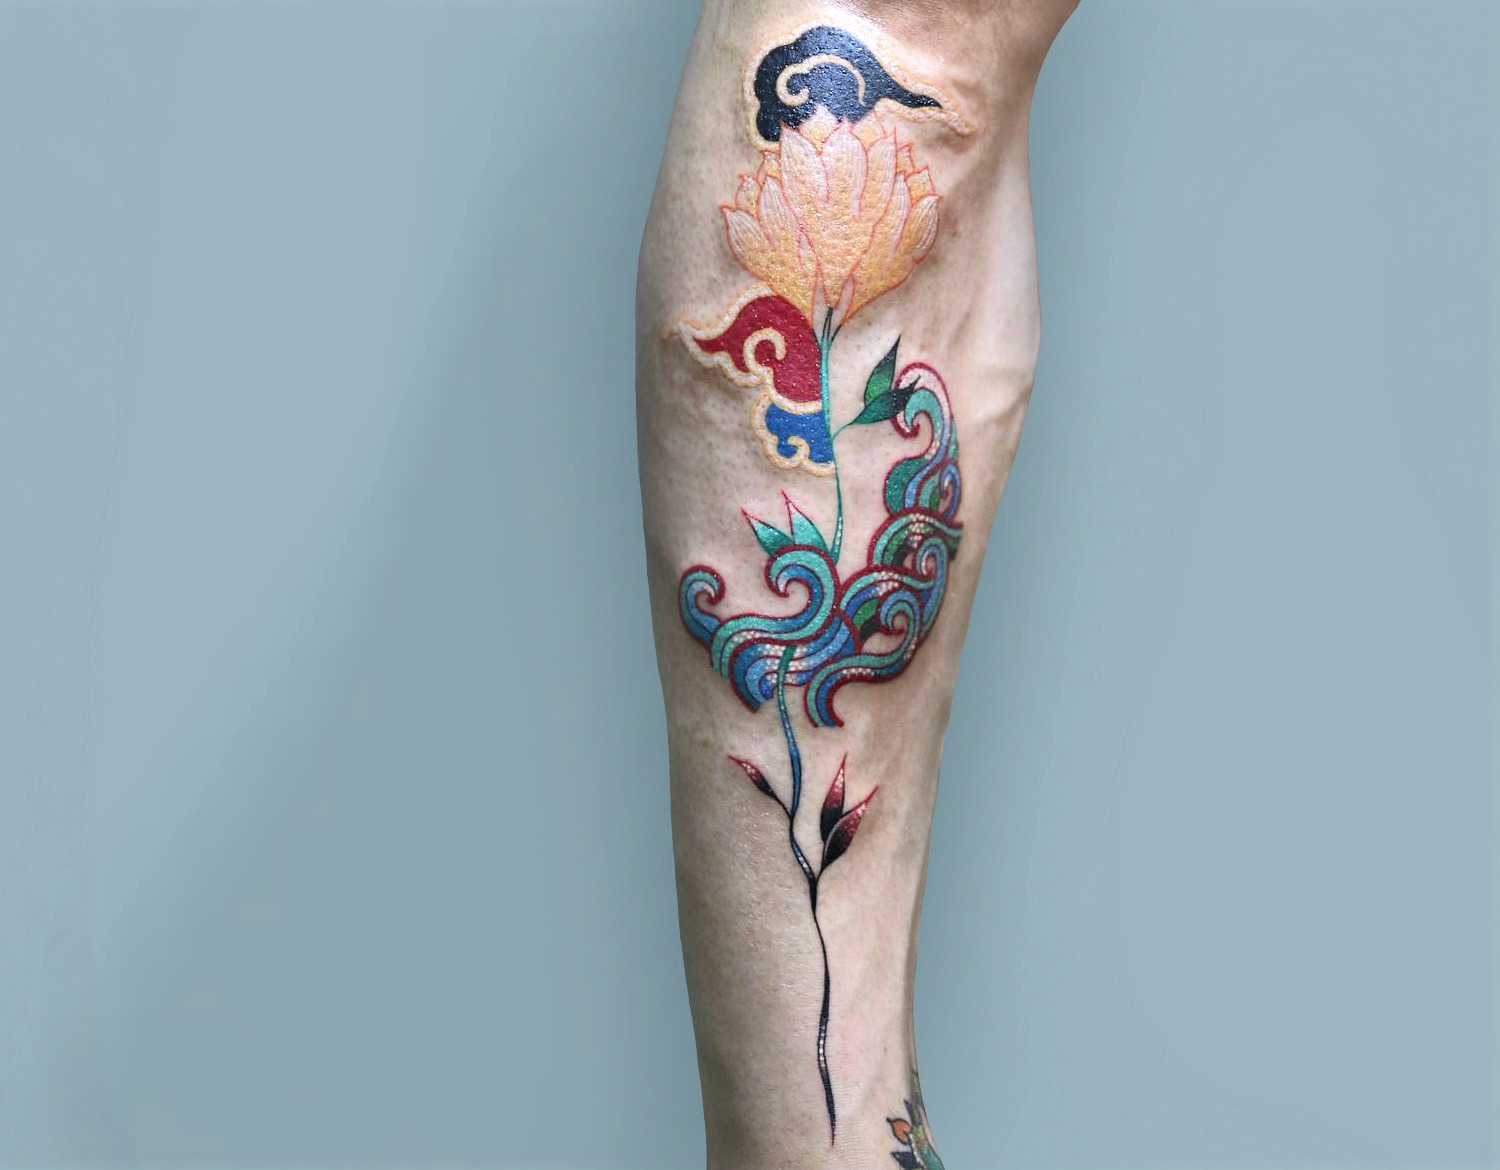 Korean art inspired flower tattoo by Pitta KKM